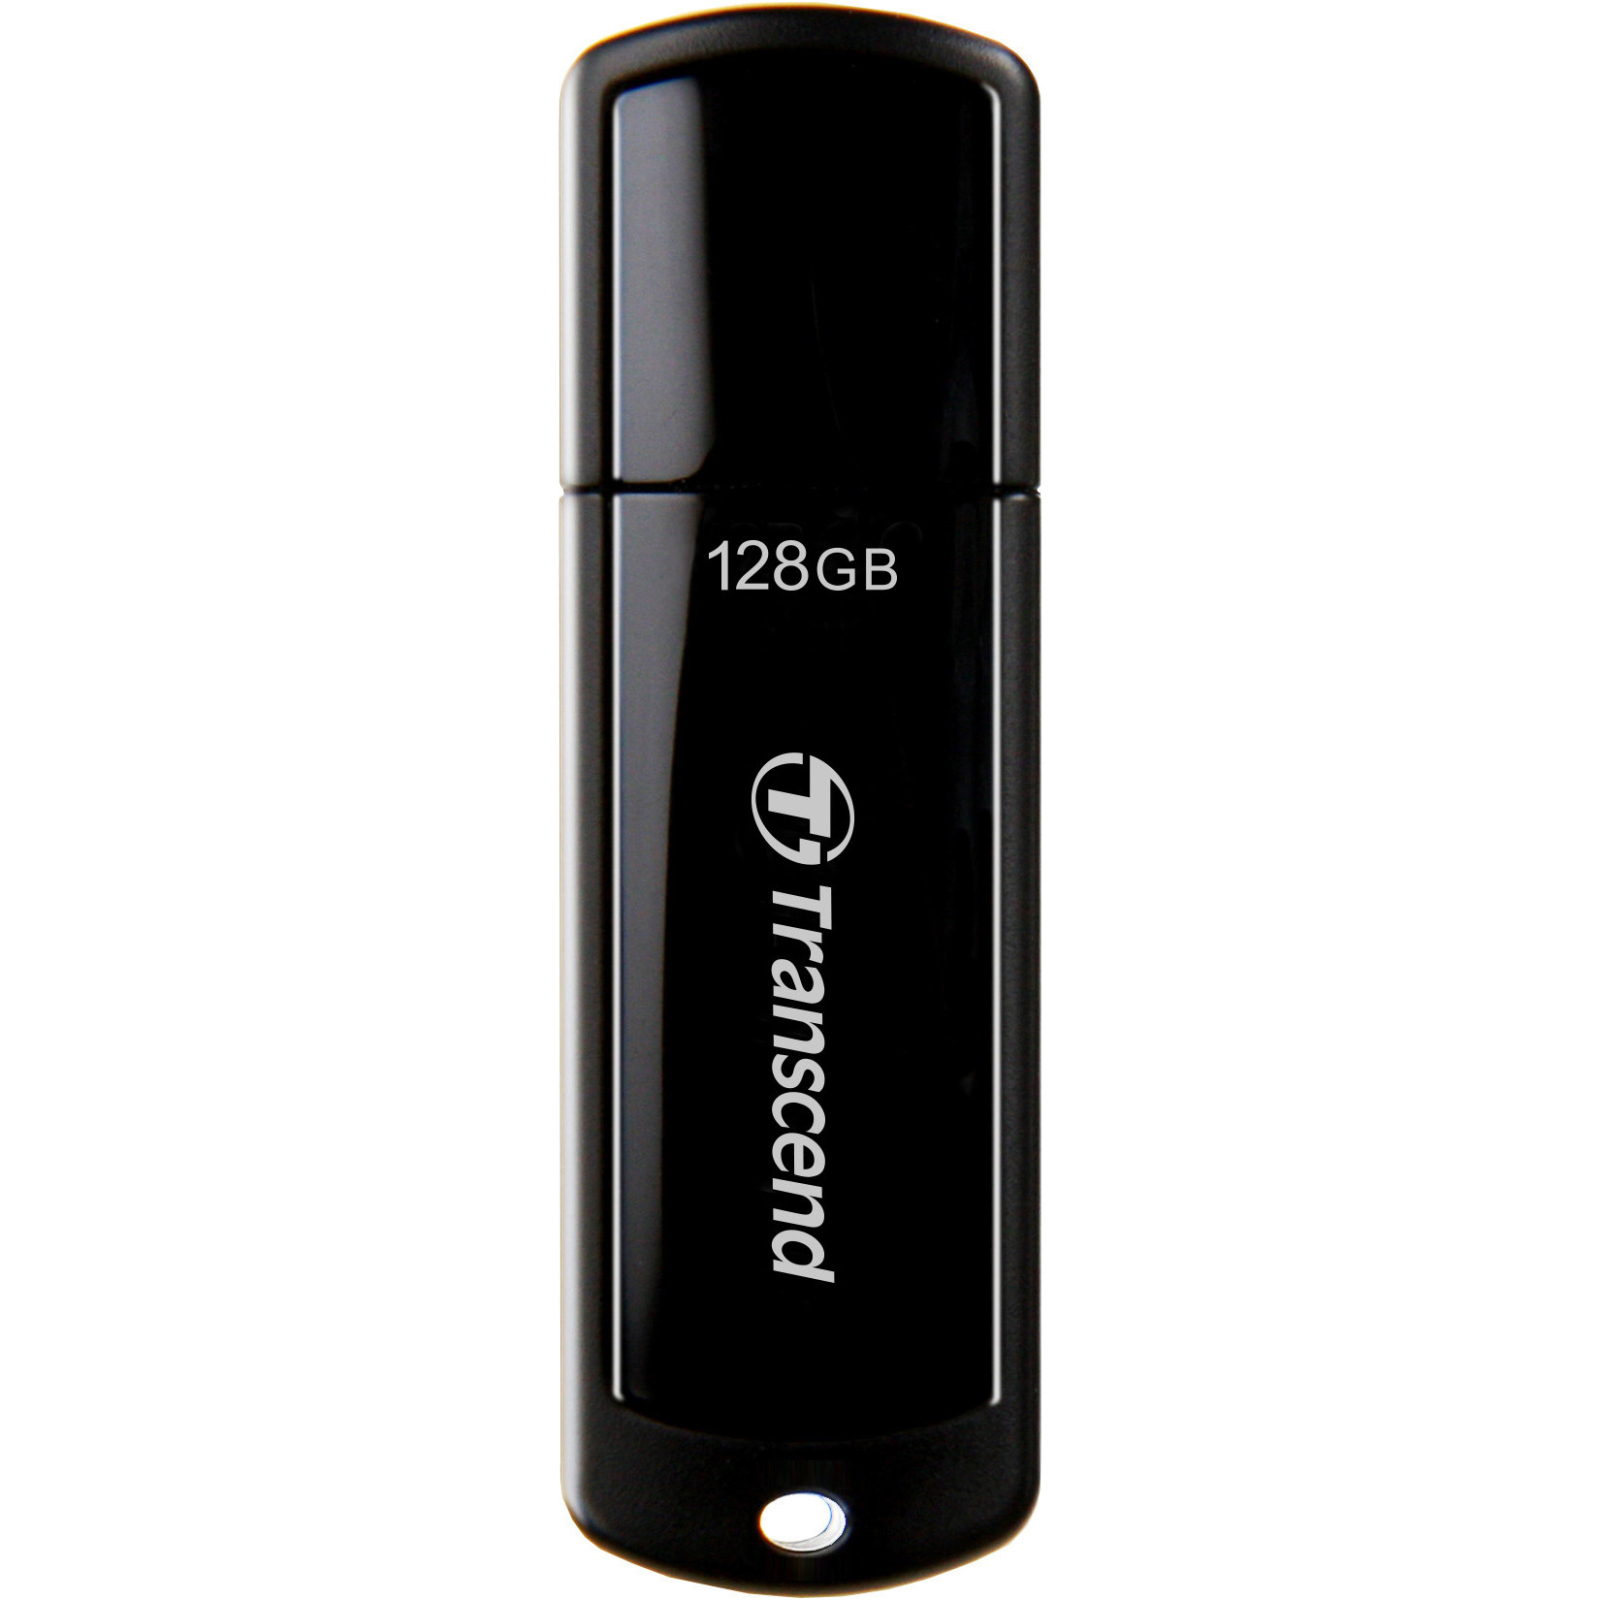 USB флеш накопитель Transcend 32Gb JetFlash 700 (TS32GJF700)